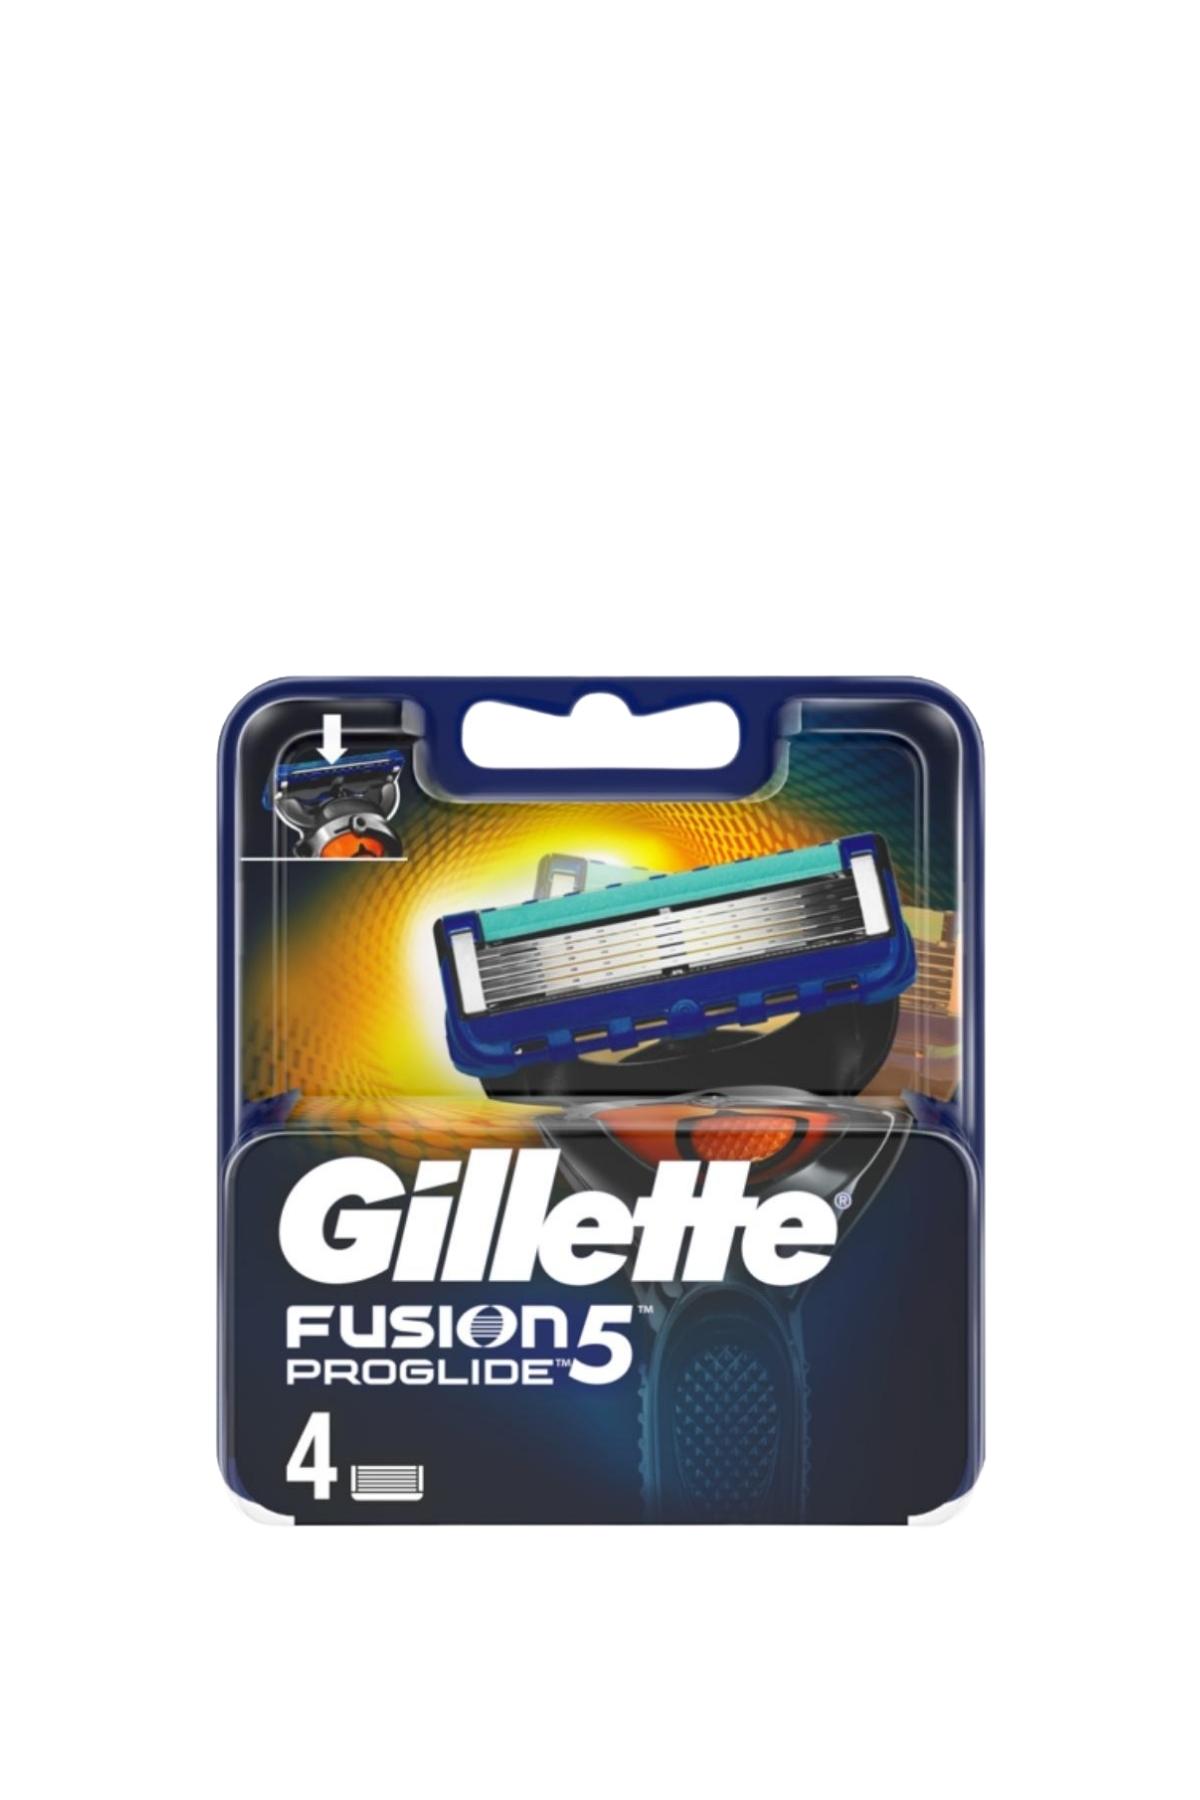 Gillette Fusion5 Yedek Tıraş Bıçağı 4 Adet